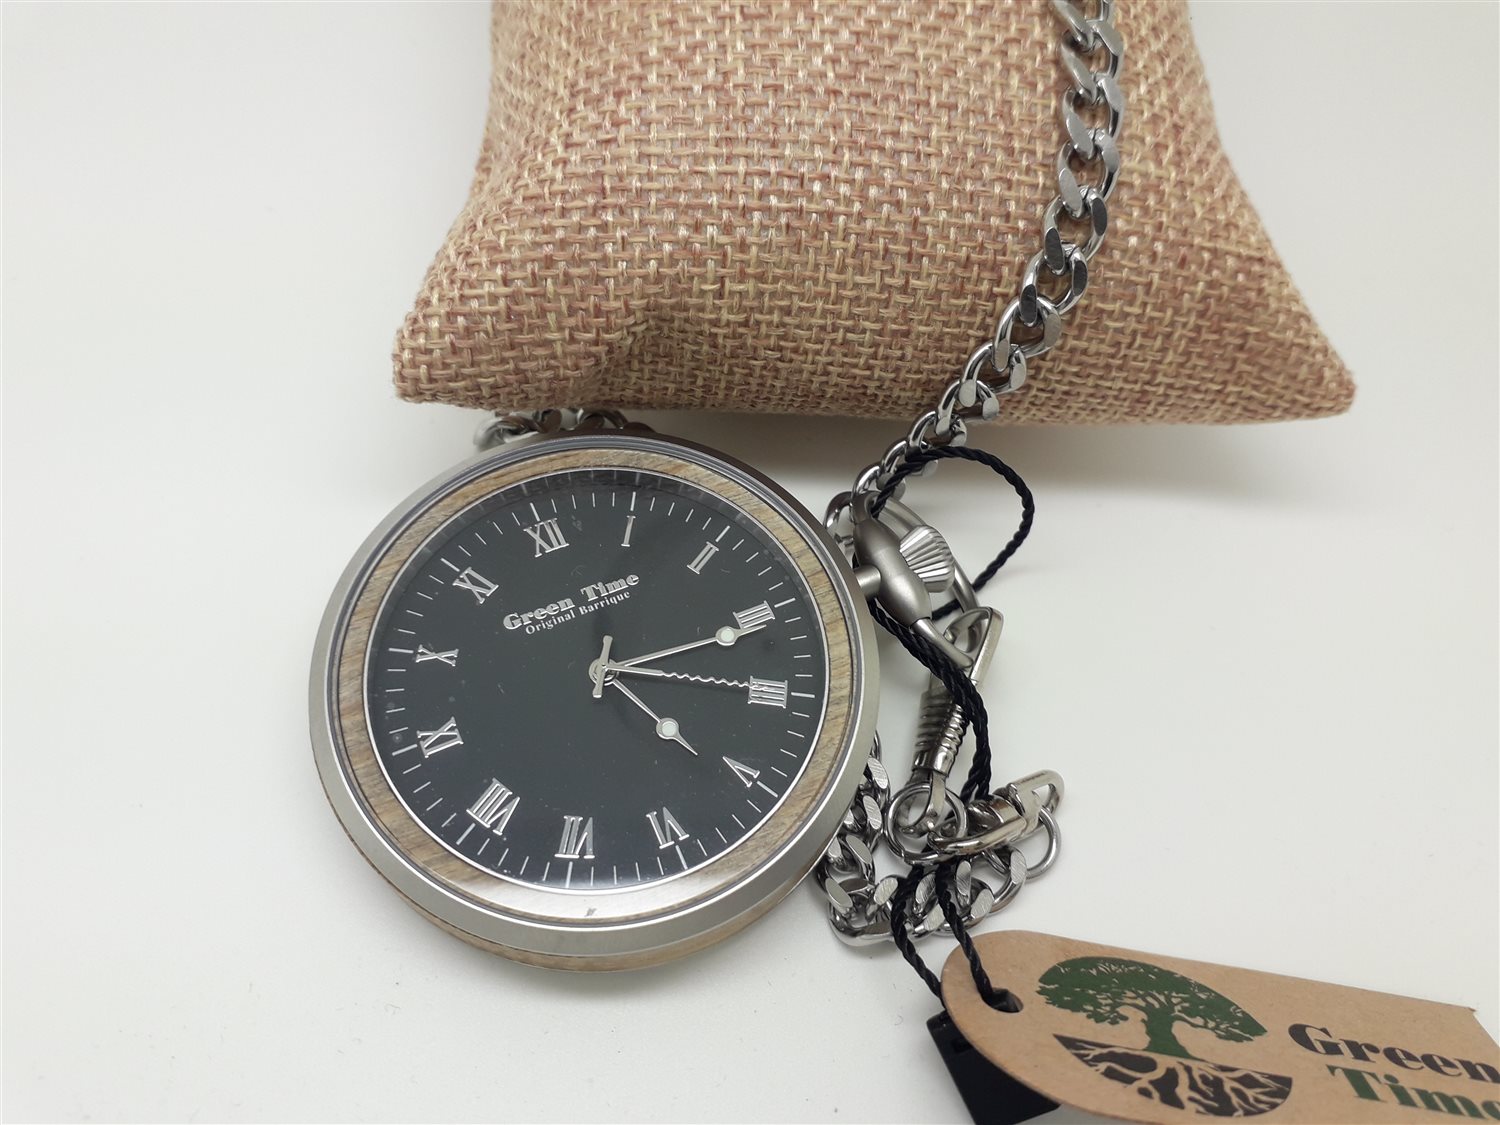 Taschenuhr Herr Time - - Oiritaly Uhren - - Quarz - Green ZW152A